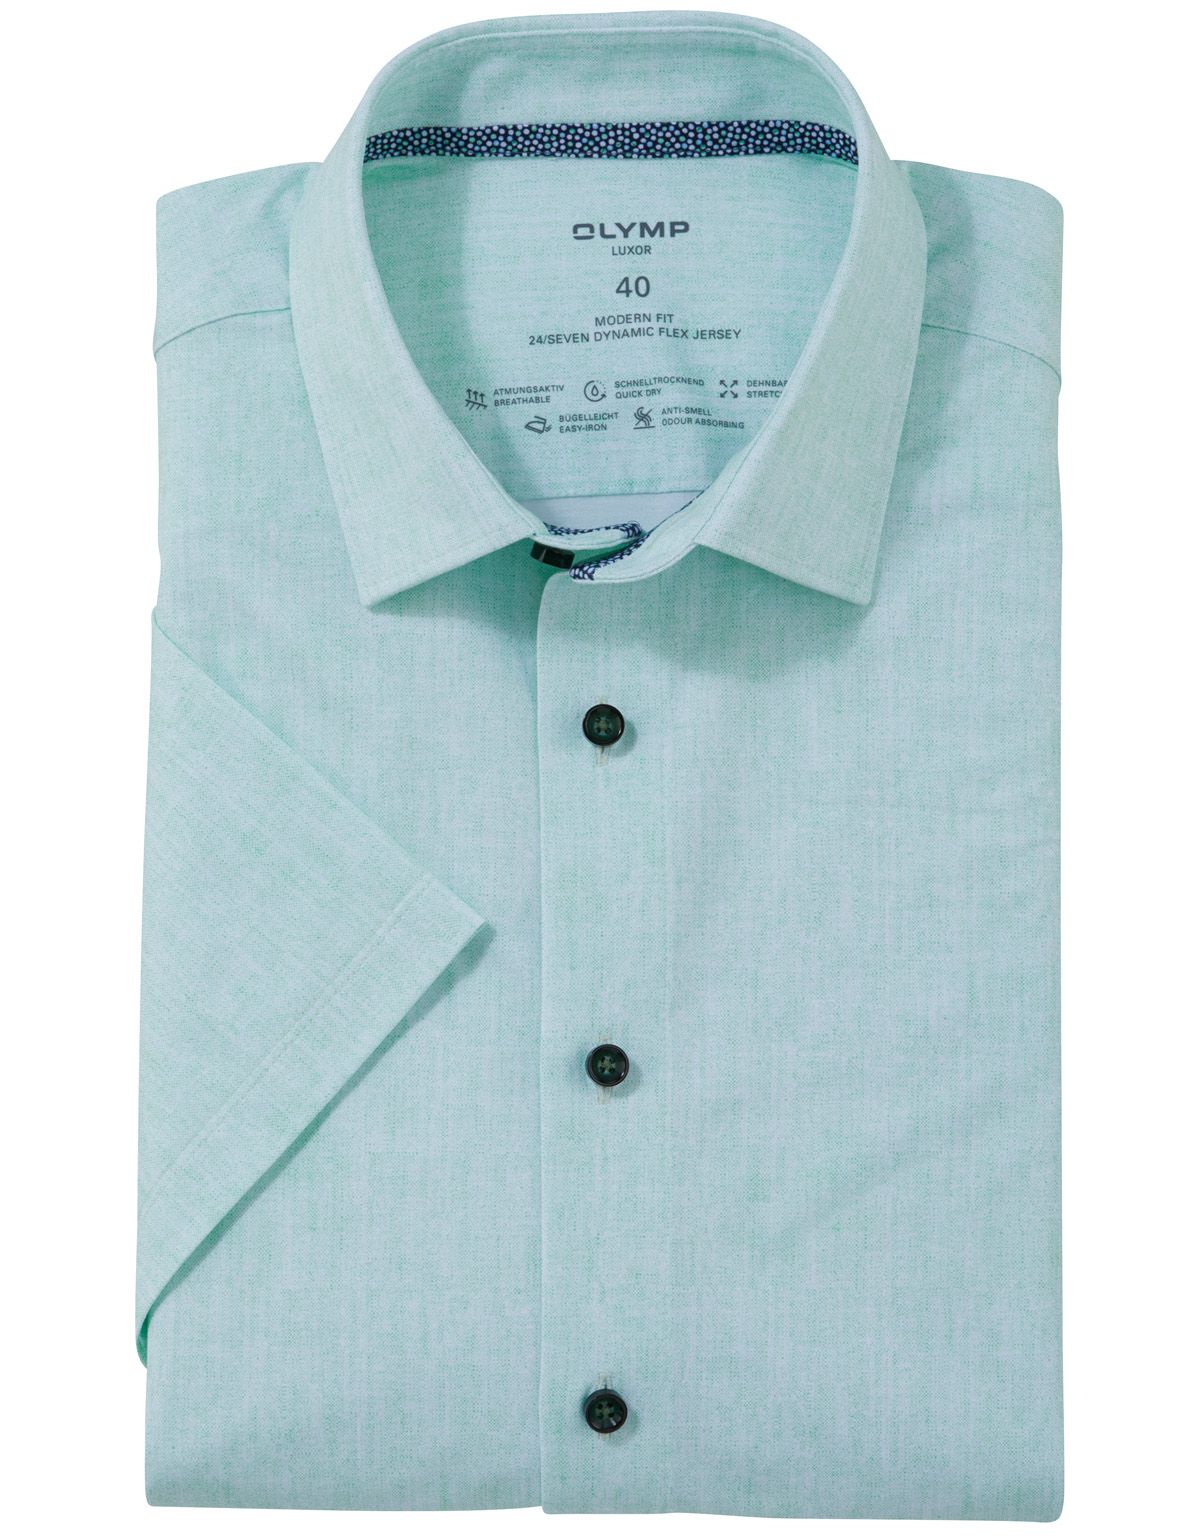 Рубашка мужская трикотажная OLYMP Luxor 24/7, modern fit[Зеленый]